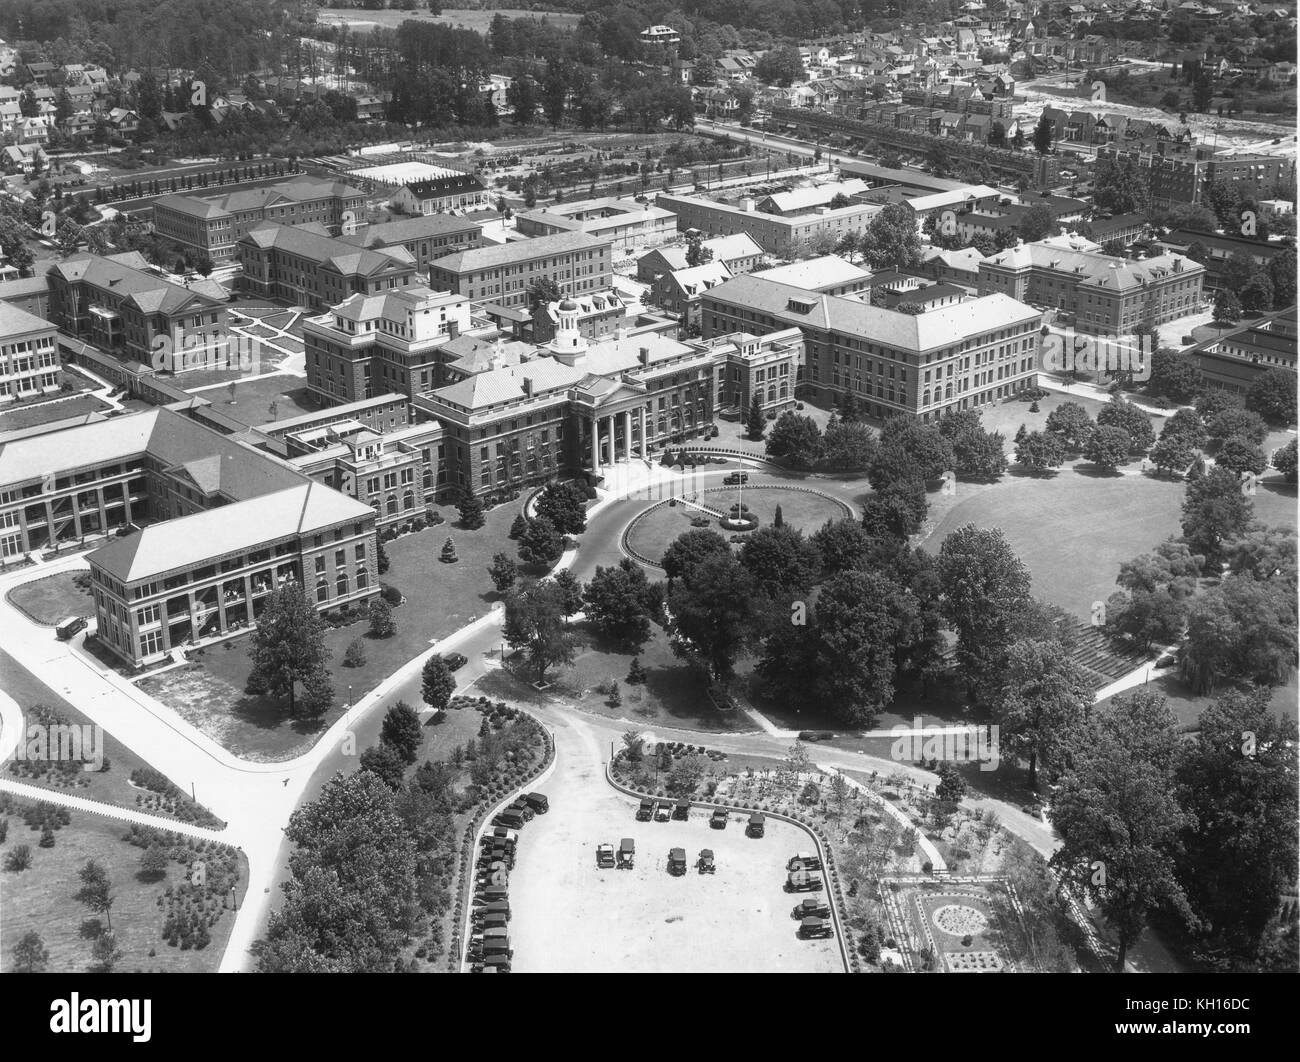 Walter Reed ospedale generale, con l'edificio principale identificabili con la sua cupola, nel centro di questa foto aeree prese da un US Army Air Corps aeromobile, Washington DC, 1931. Foto Stock